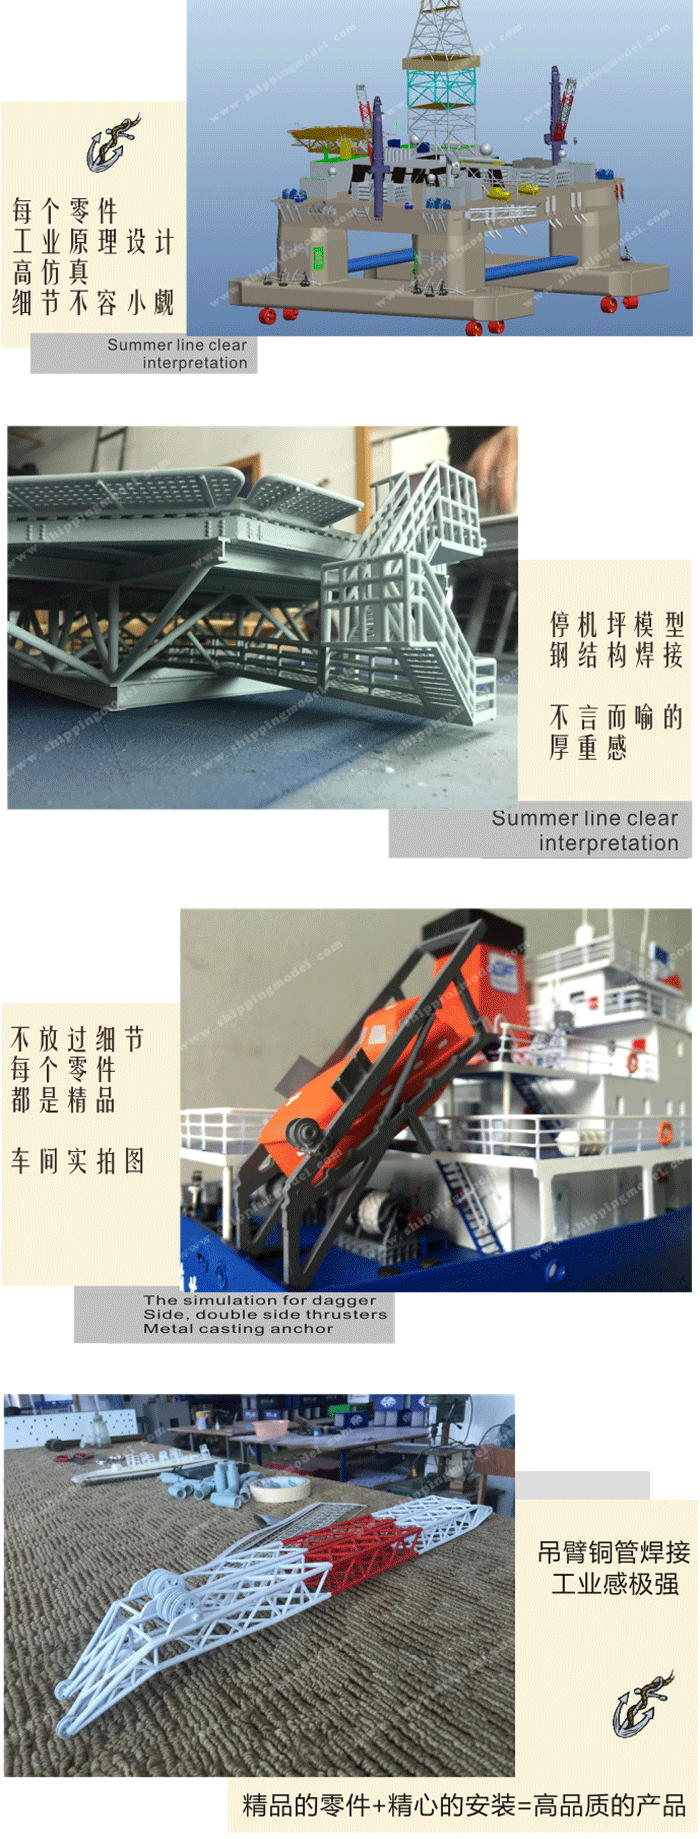 定制船模_40cm海工201工程船模型_海艺坊模型工厂